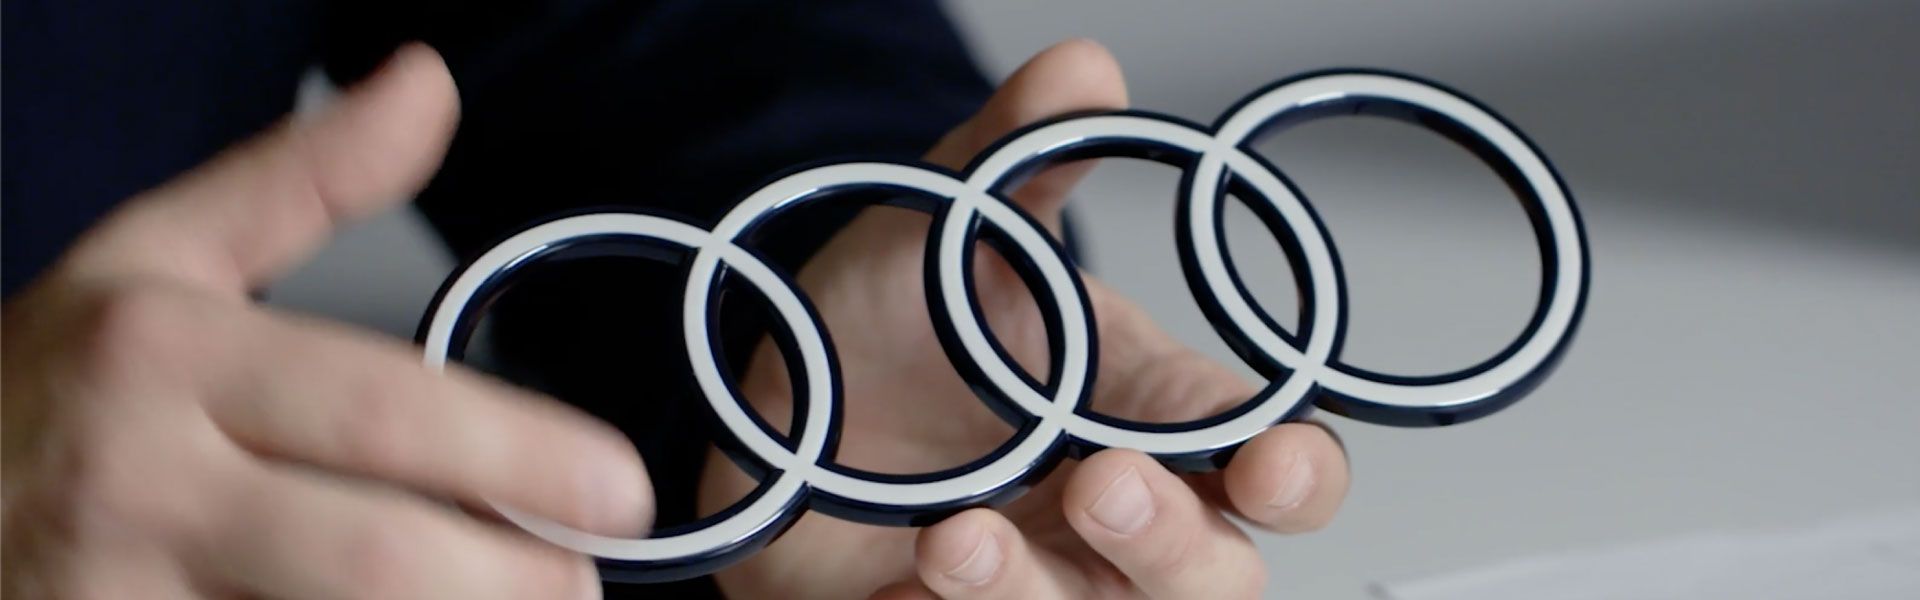 Hände halten ein Audi Logo als Profil